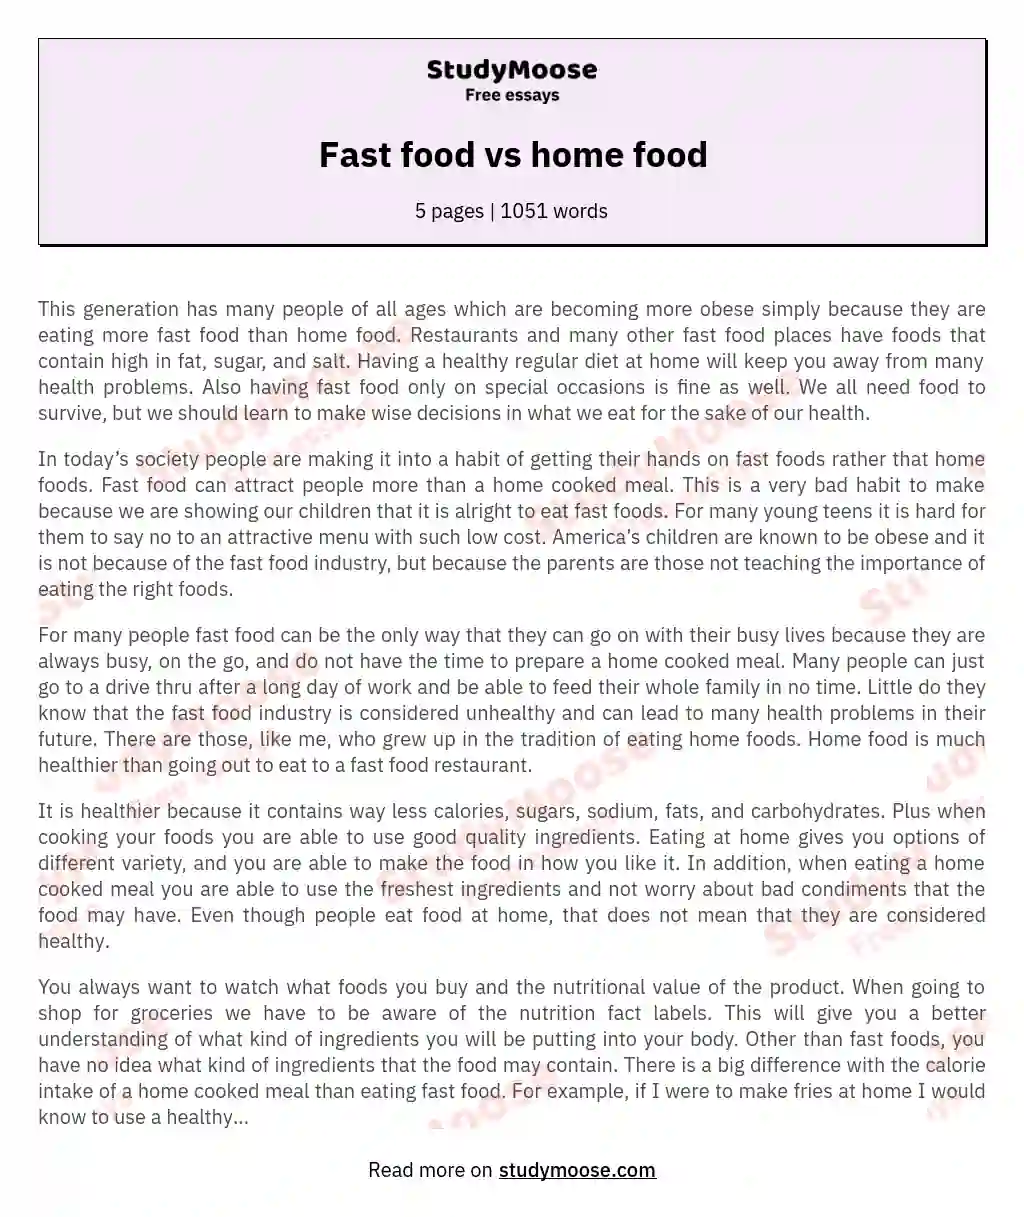 Fast food vs home food essay